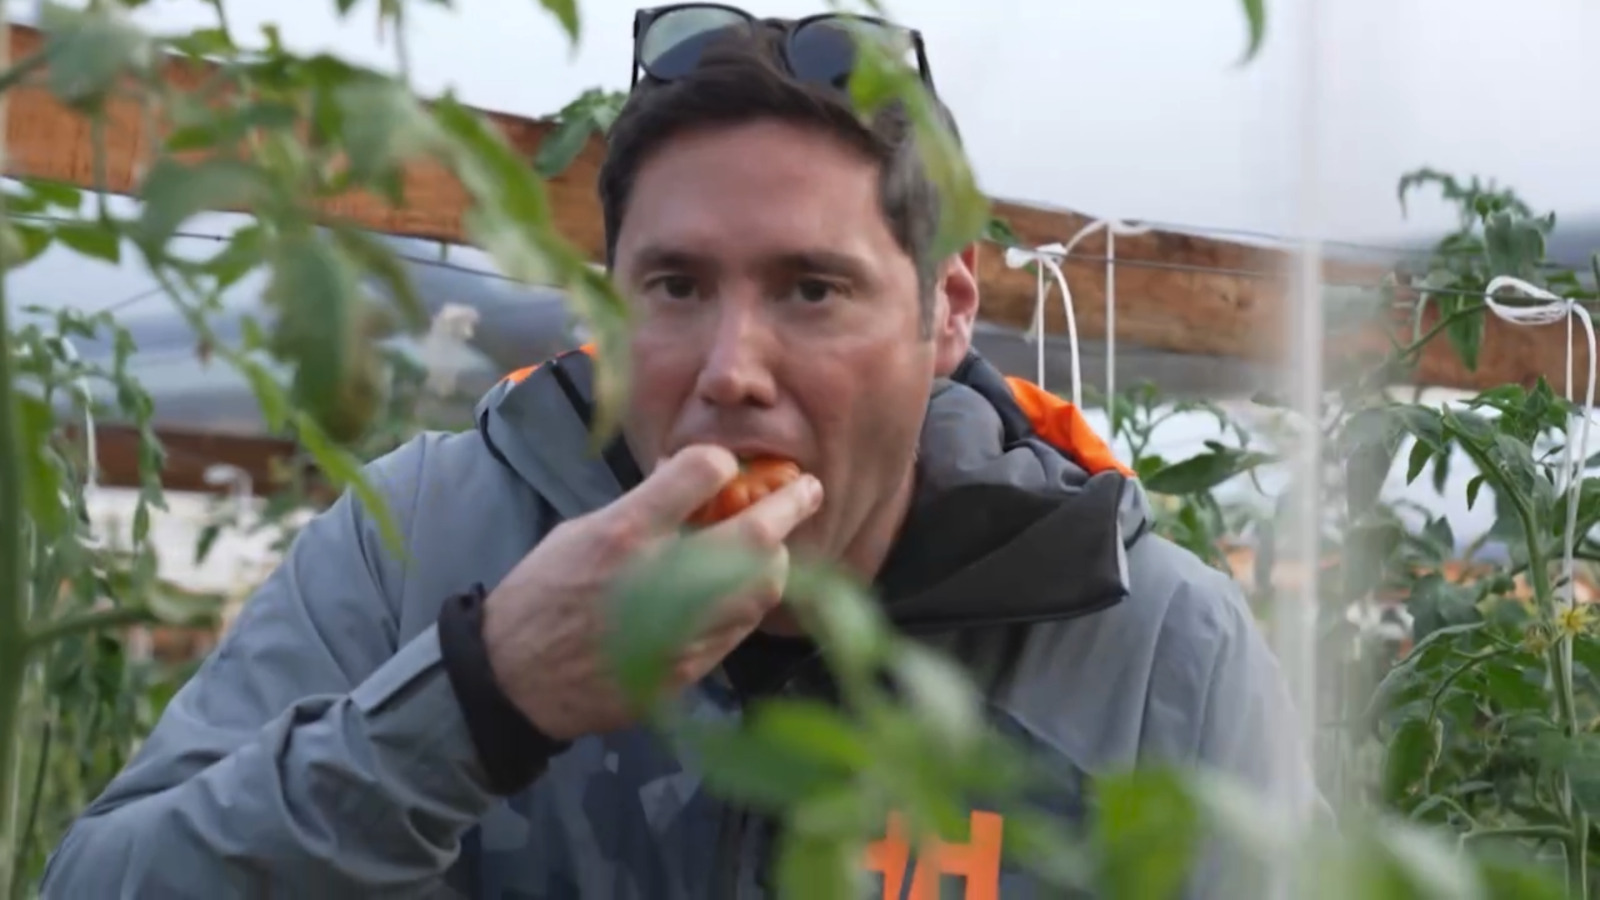 [VIDEO] “Lugares que hablan” mostró la maravillosa historia del tomate limachino